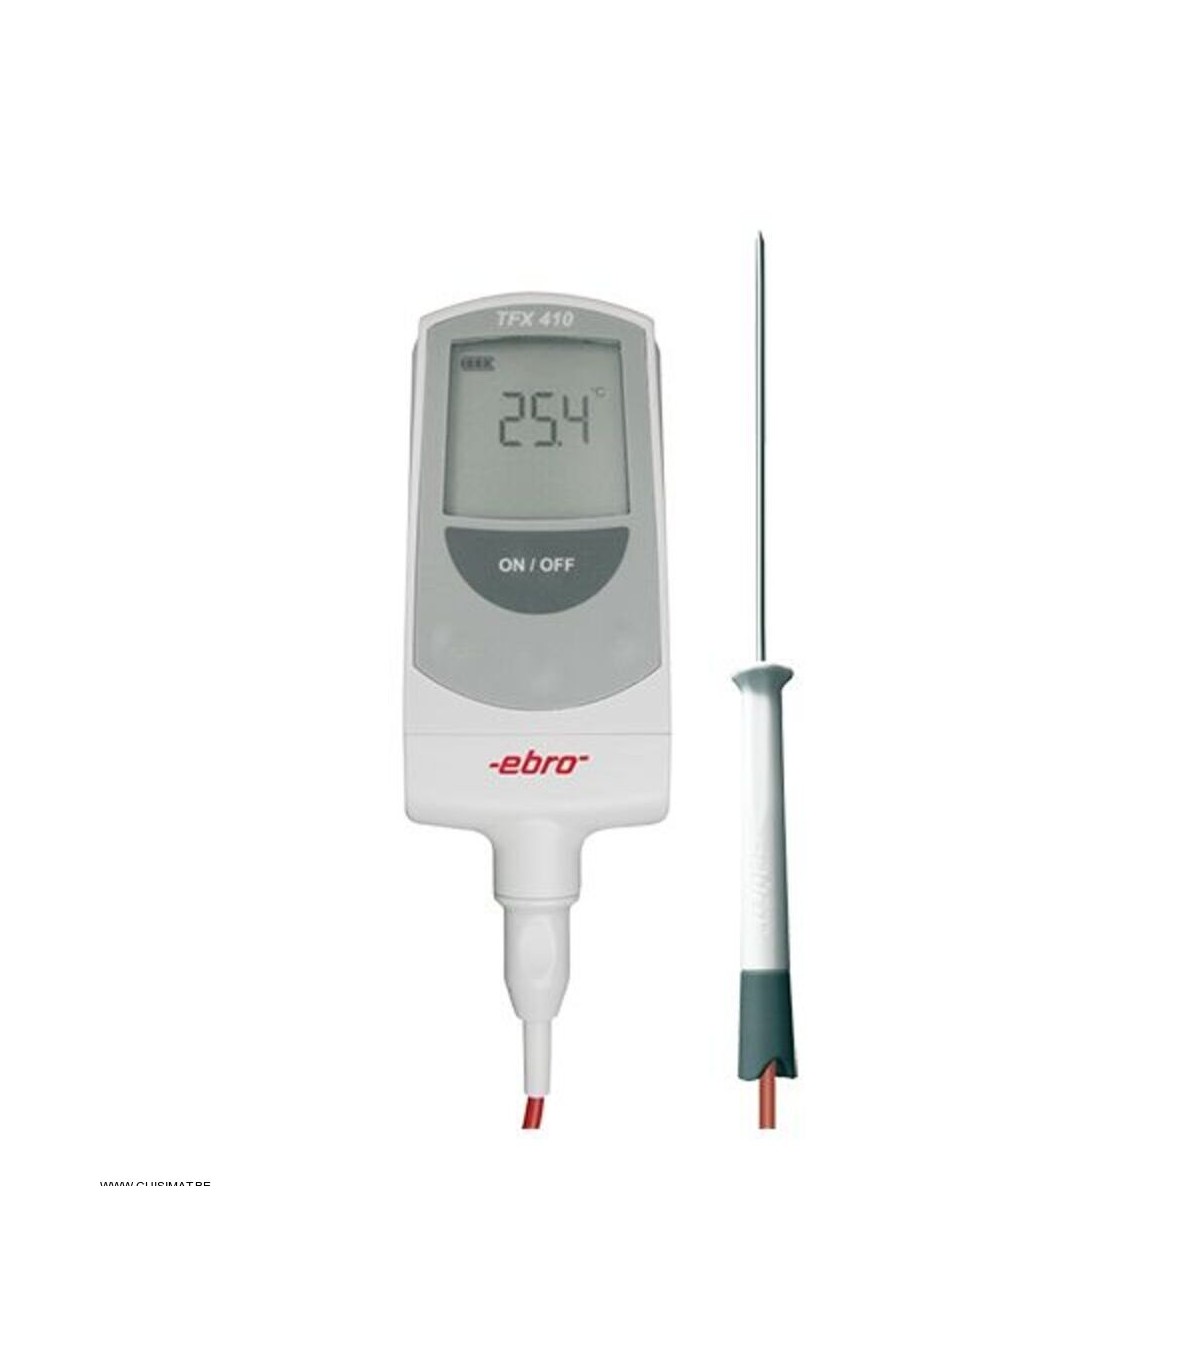 Thermomètre digital avec sonde de capteur +250°C